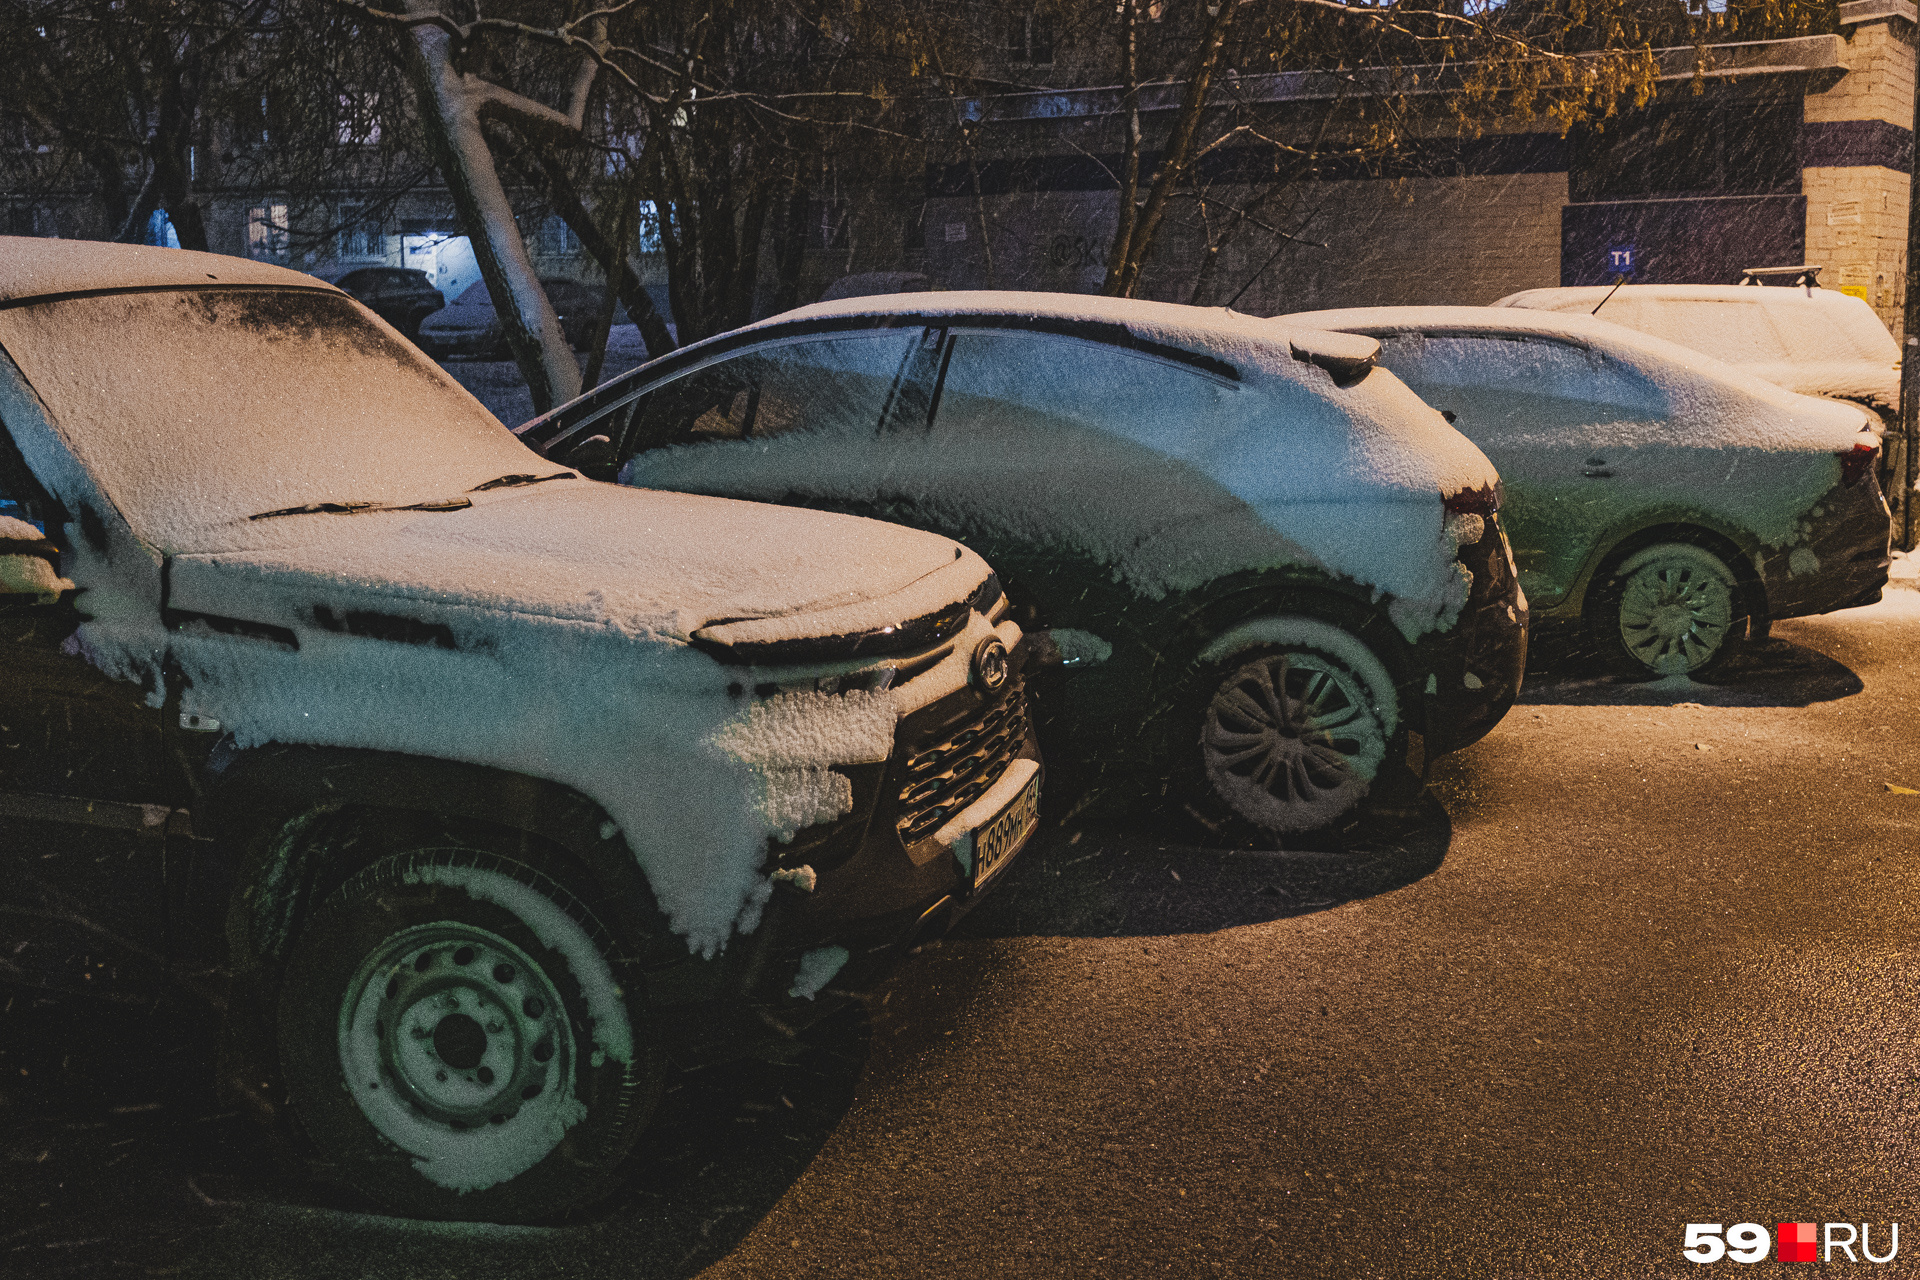 Завтра придется очищать автомобили от снега и наледи...